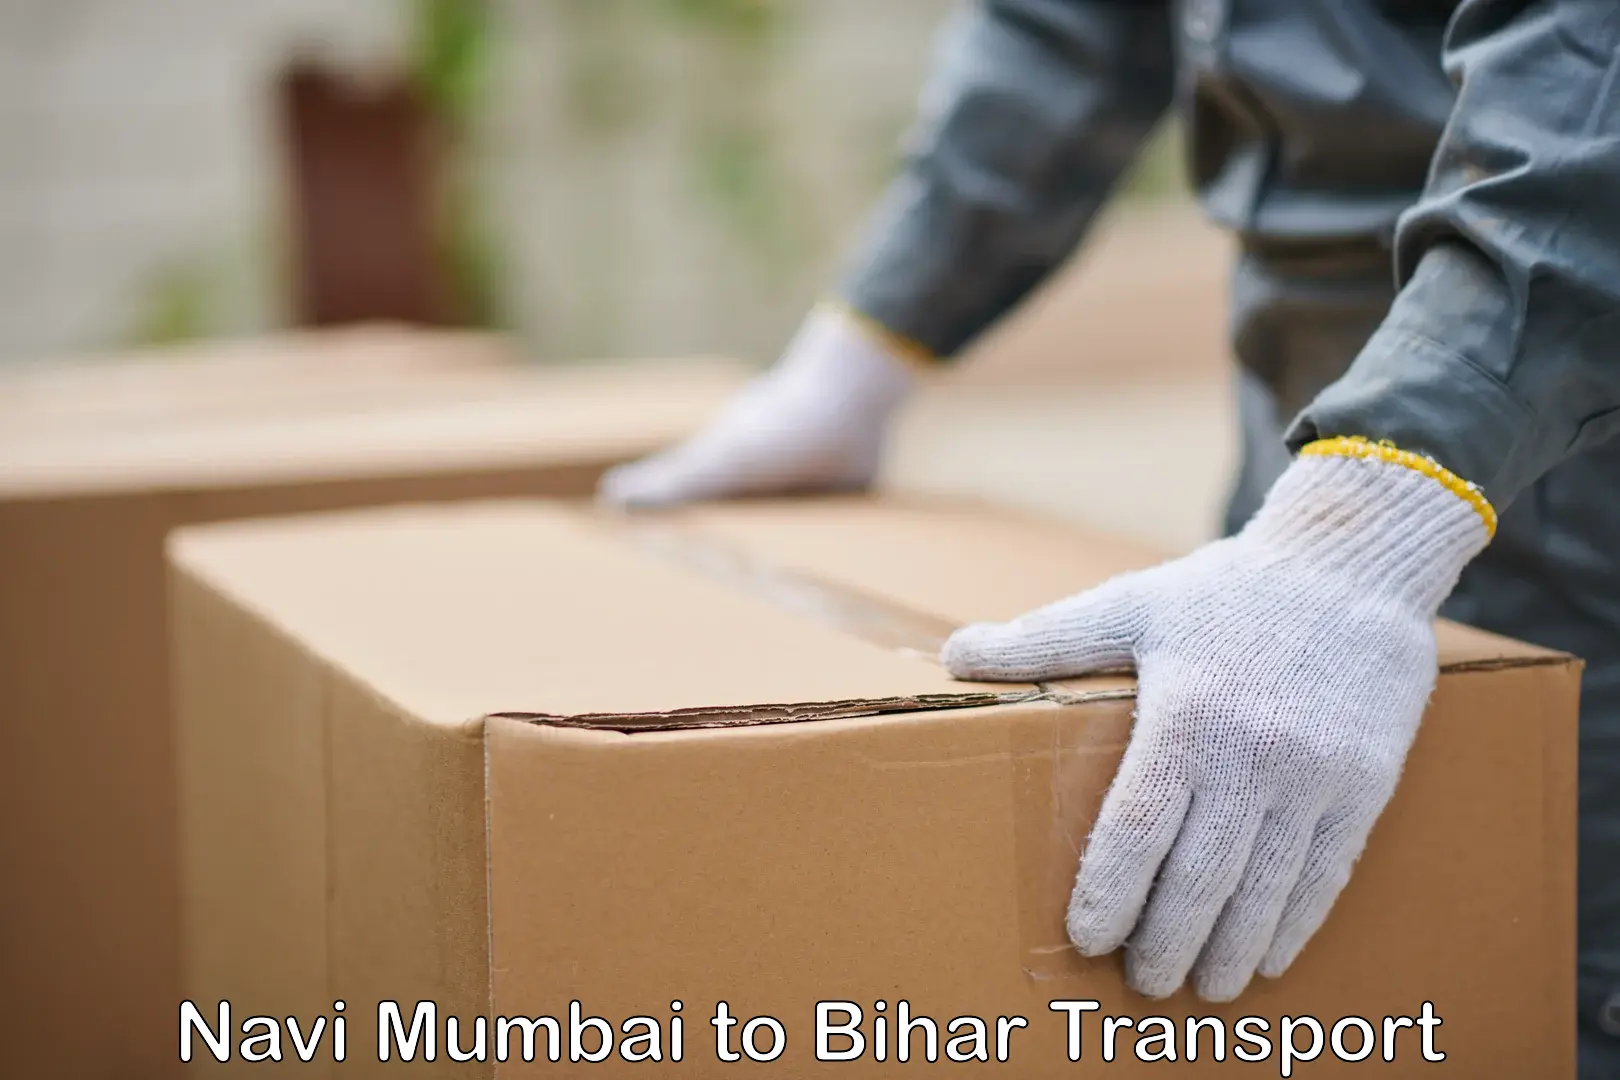 Air freight transport services Navi Mumbai to Bihar